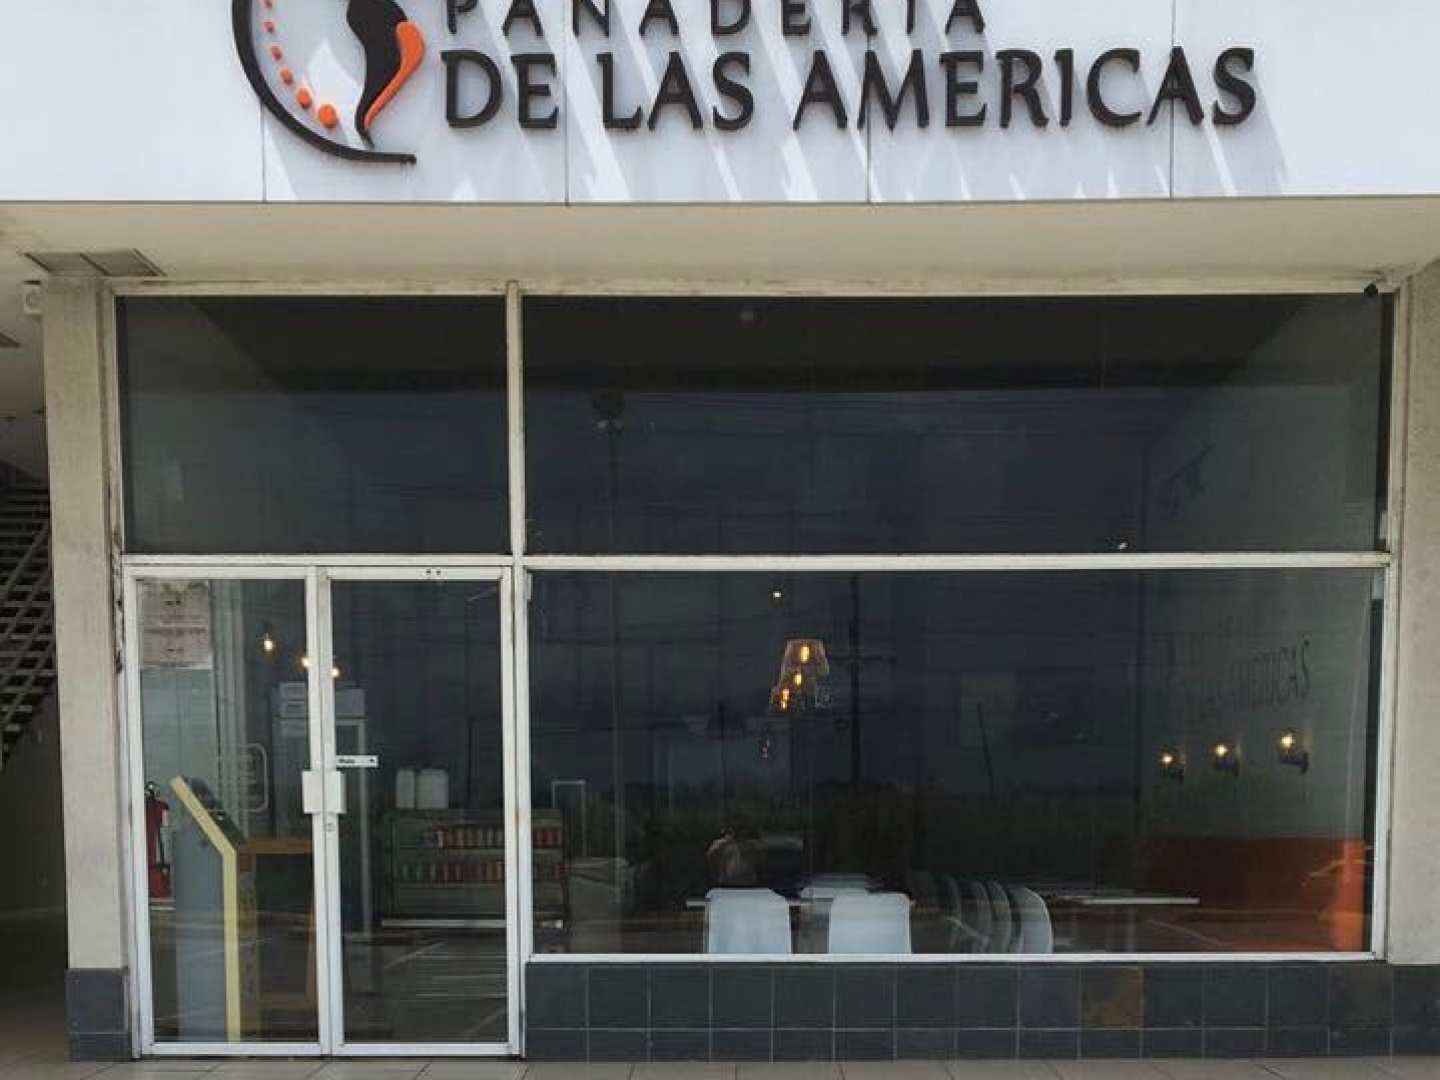 Panaderia de Las Americas(Pacora)